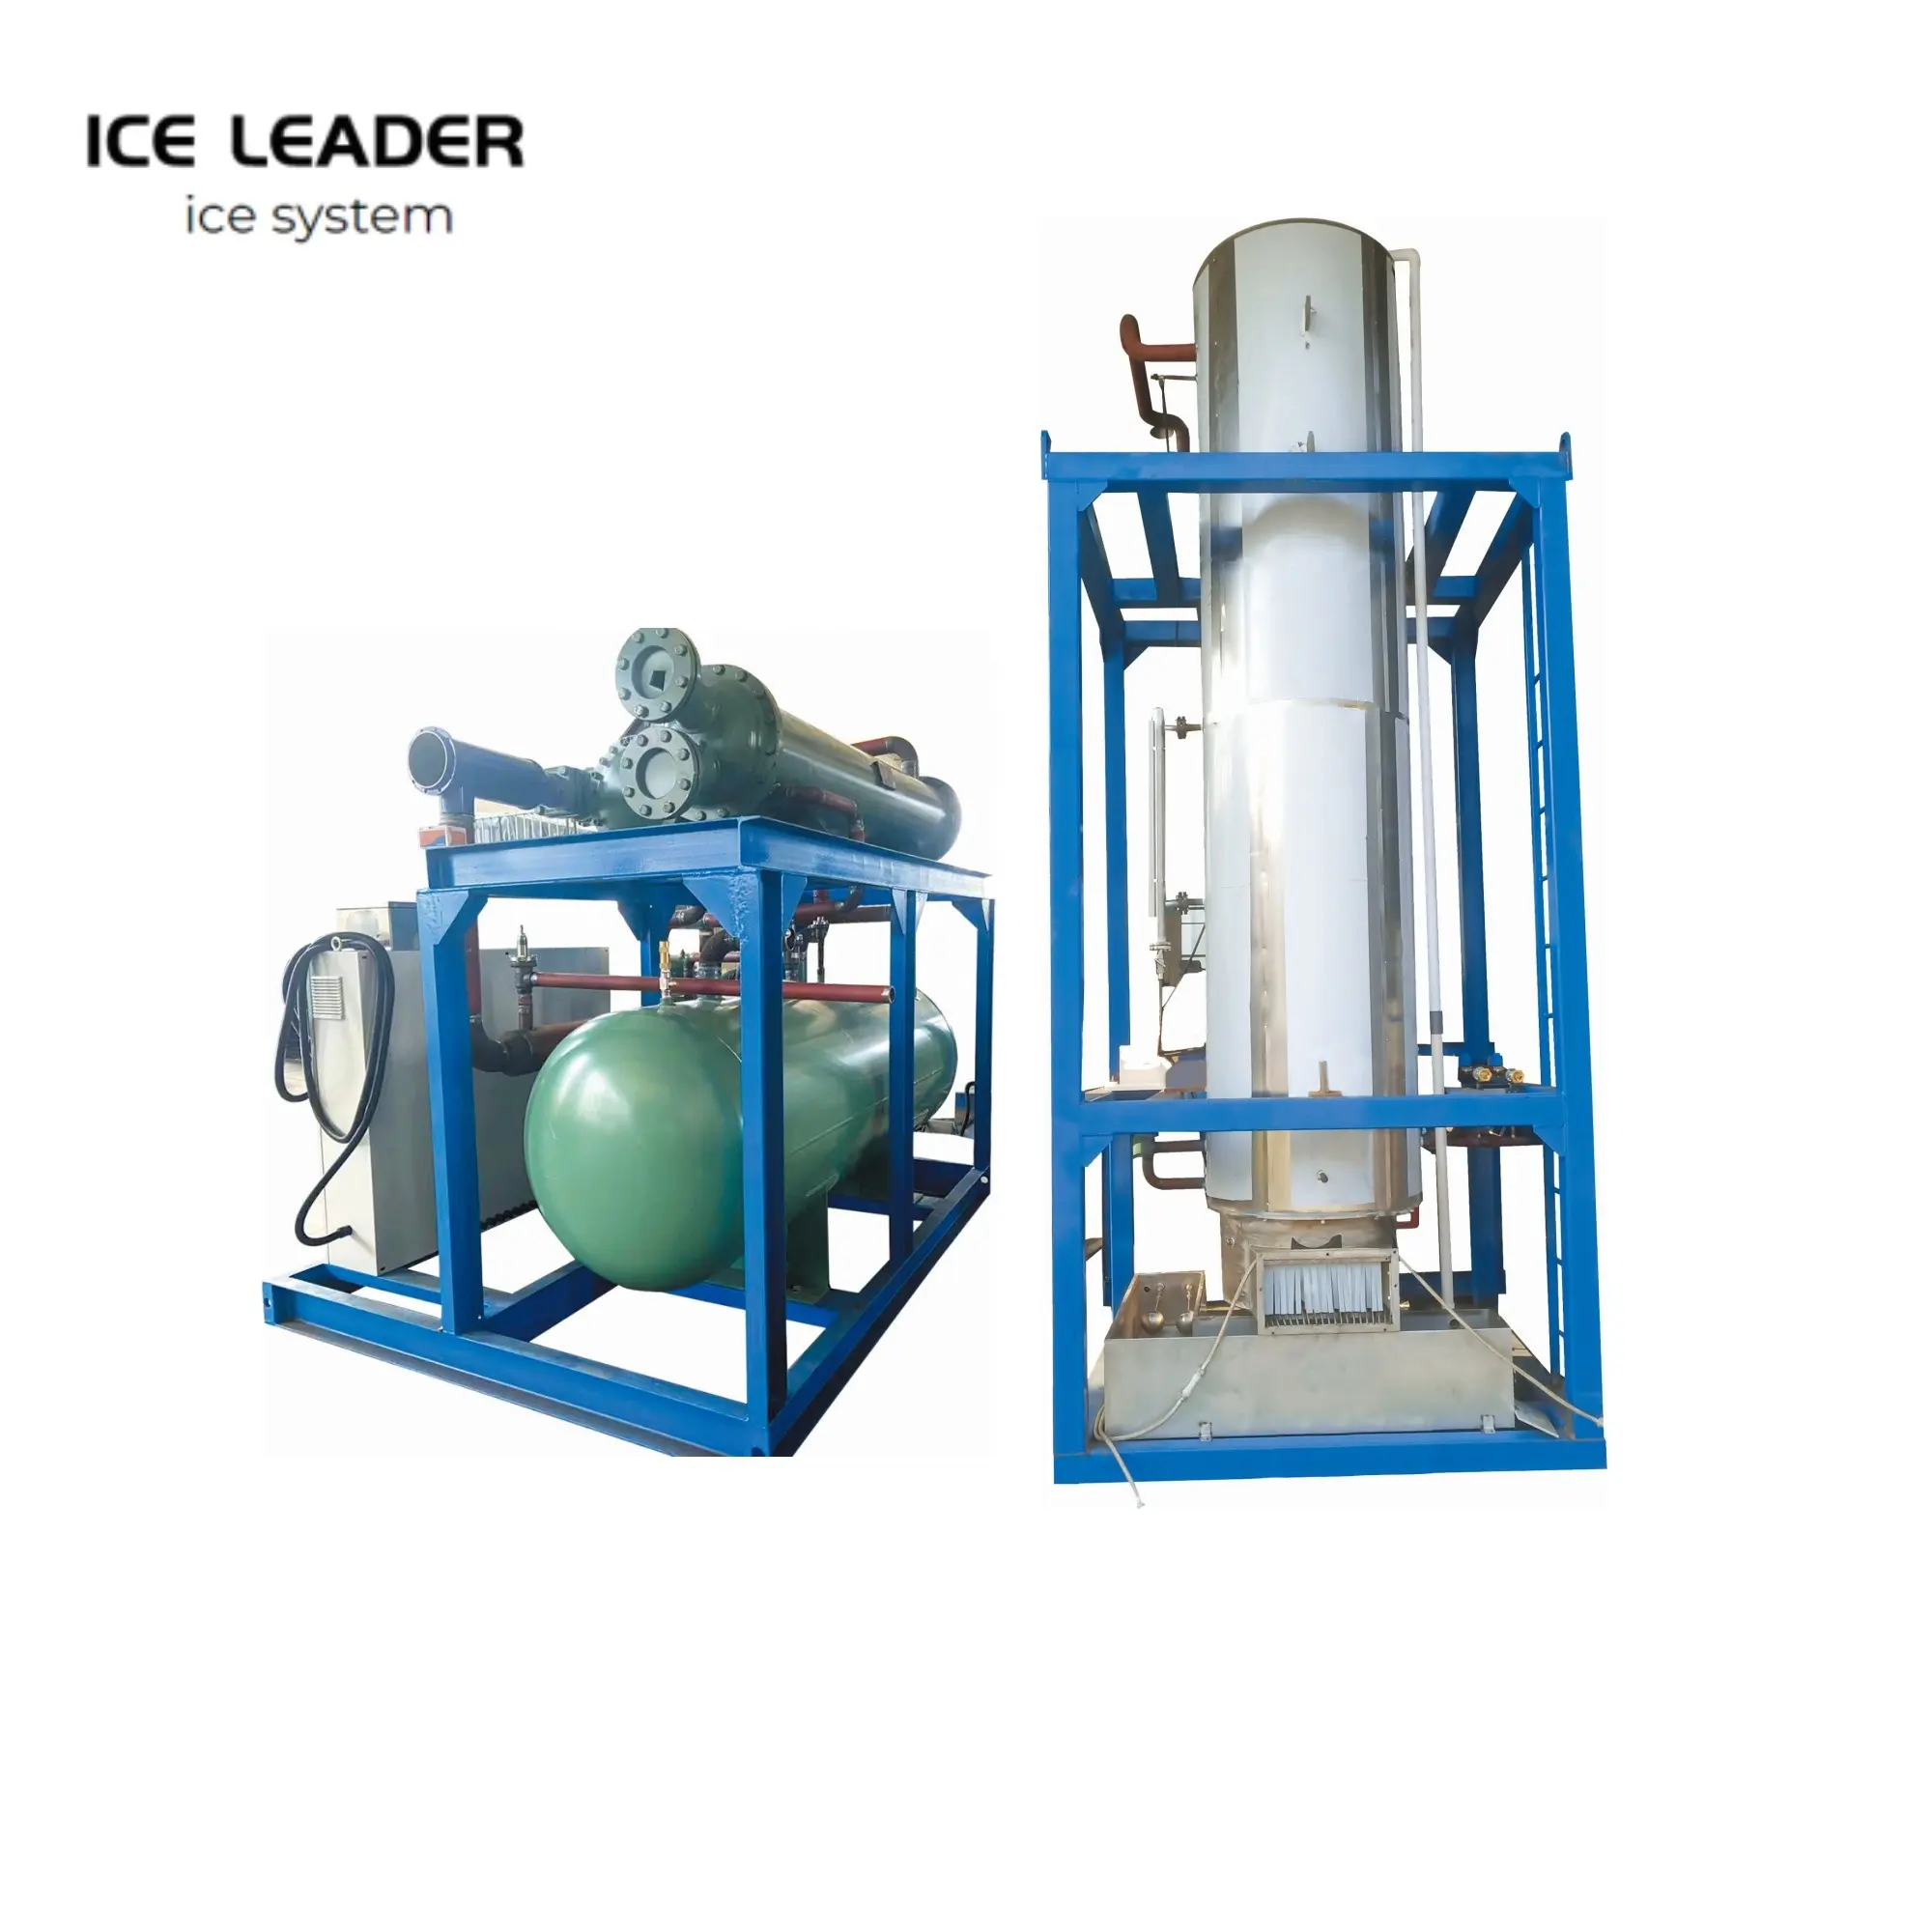 1-40 Ton/ 24 ore commerciale industriale fiocco/tubo/blocco cubo di ghiaccio macchina per la lavorazione degli alimenti e della pesca